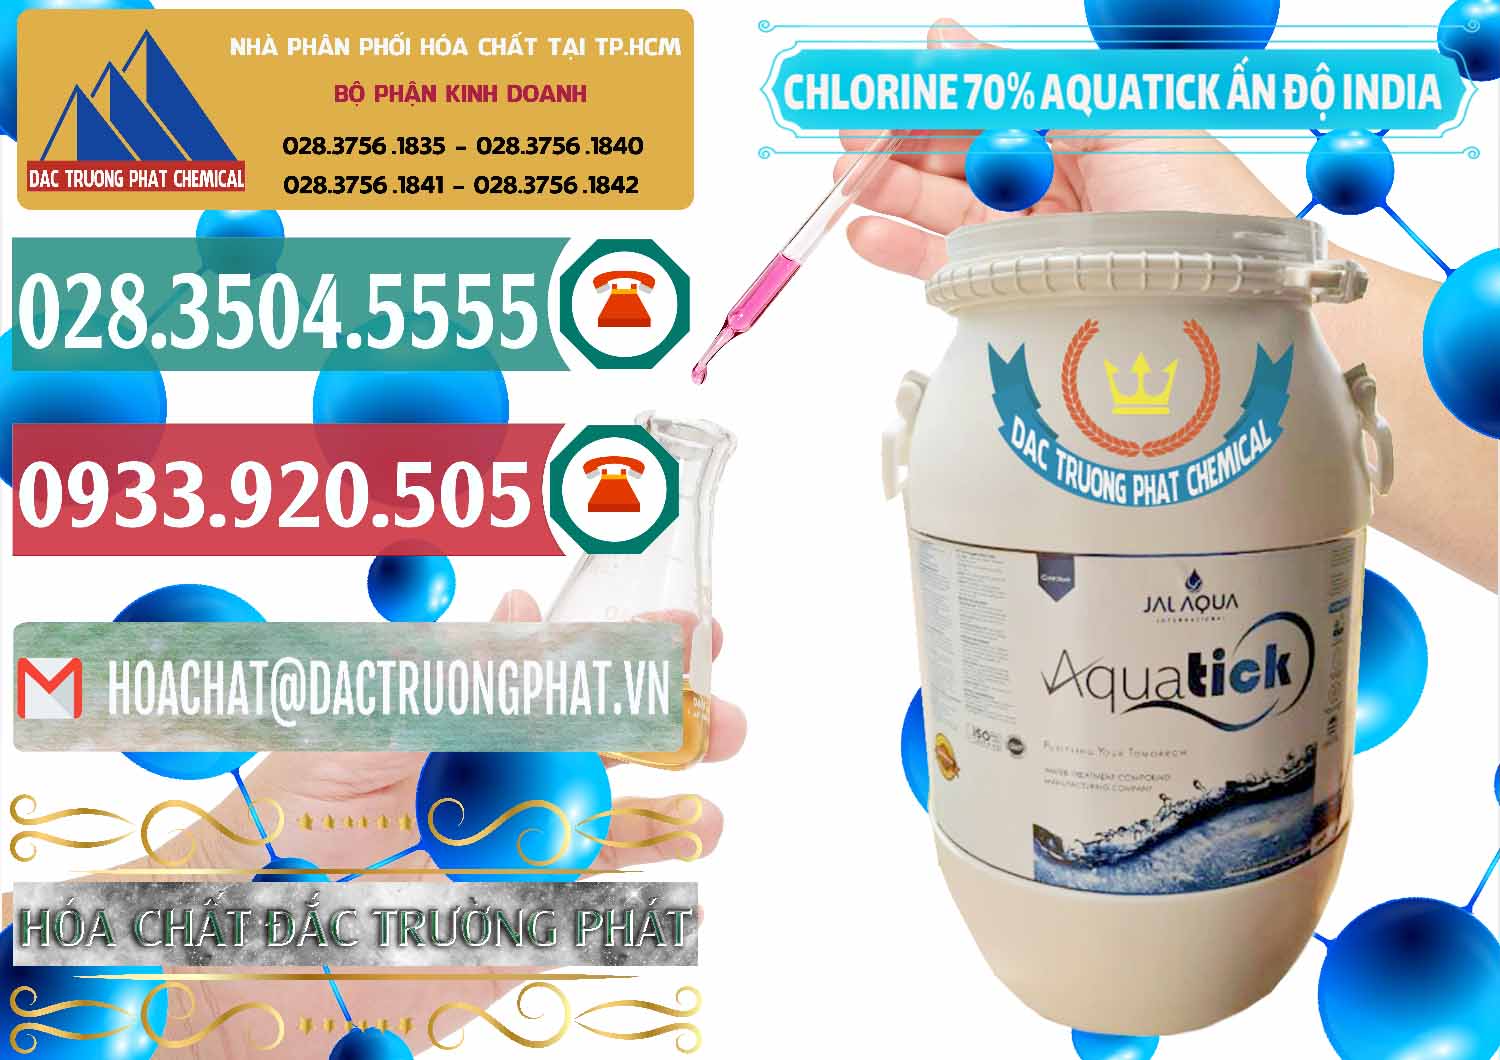 Công ty bán ( phân phối ) Chlorine – Clorin 70% Aquatick Jal Aqua Ấn Độ India - 0215 - Cty chuyên nhập khẩu & cung cấp hóa chất tại TP.HCM - muabanhoachat.vn